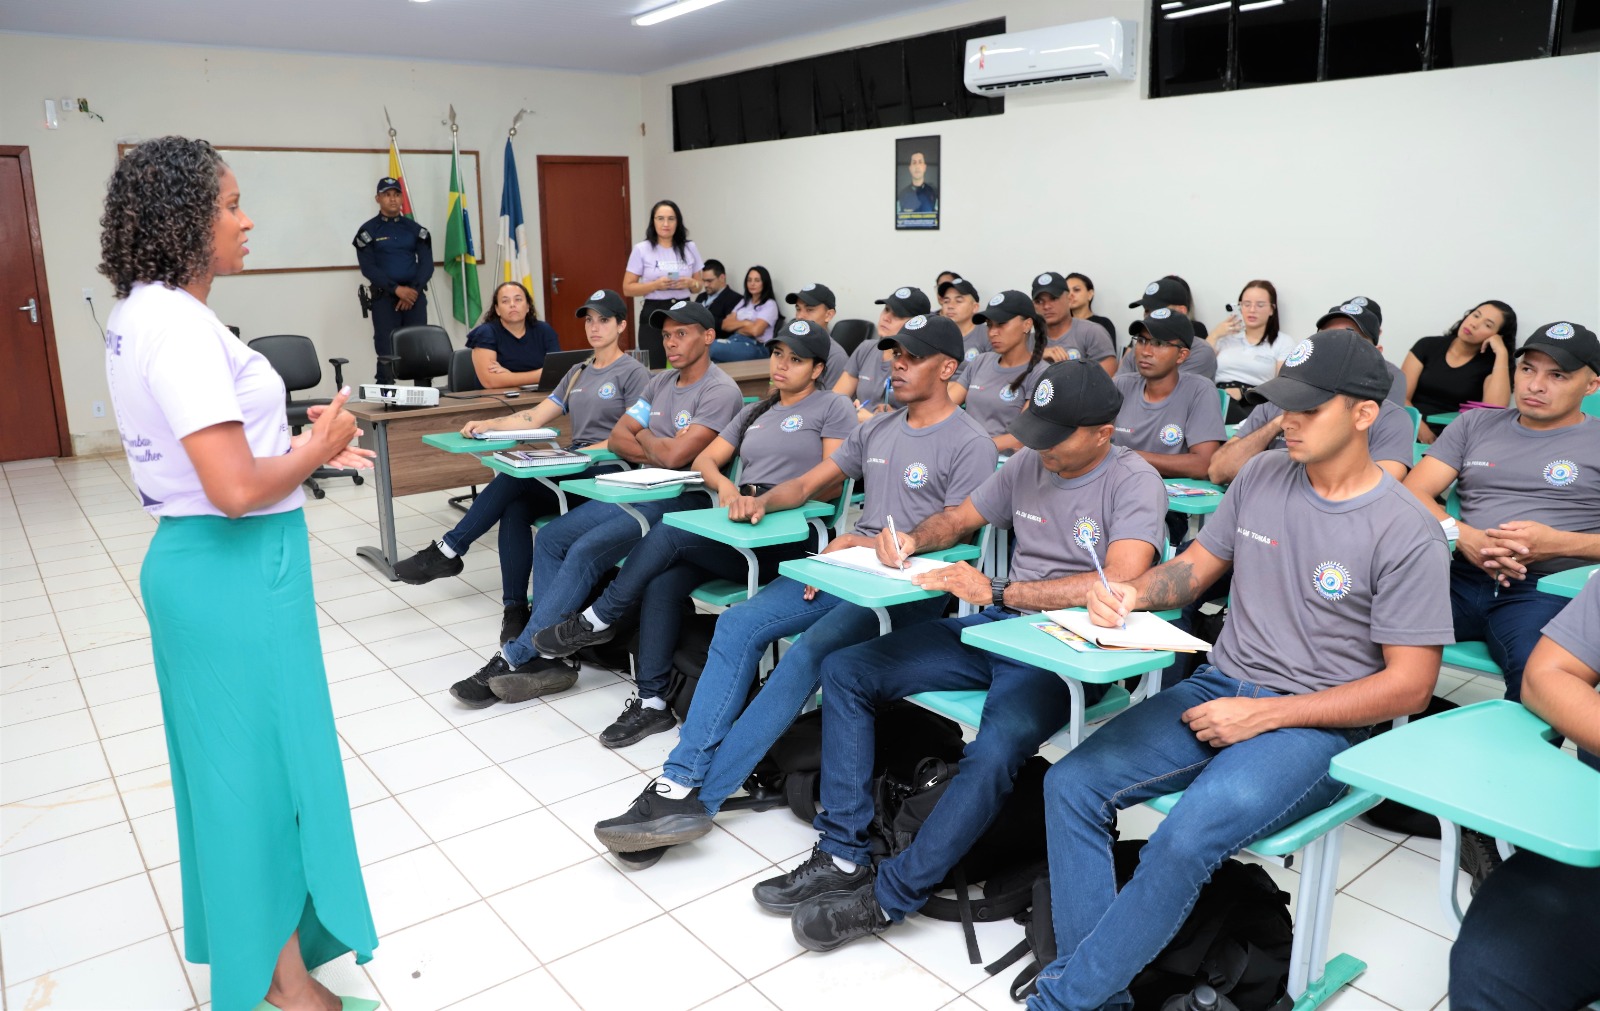 A profissional do CREAS reforçou que, para acolher, realizar uma escuta ativa e fortalecer o emocional de mulheres vítimas de violência doméstica, em Araguaína, existe a rede proteção municipal